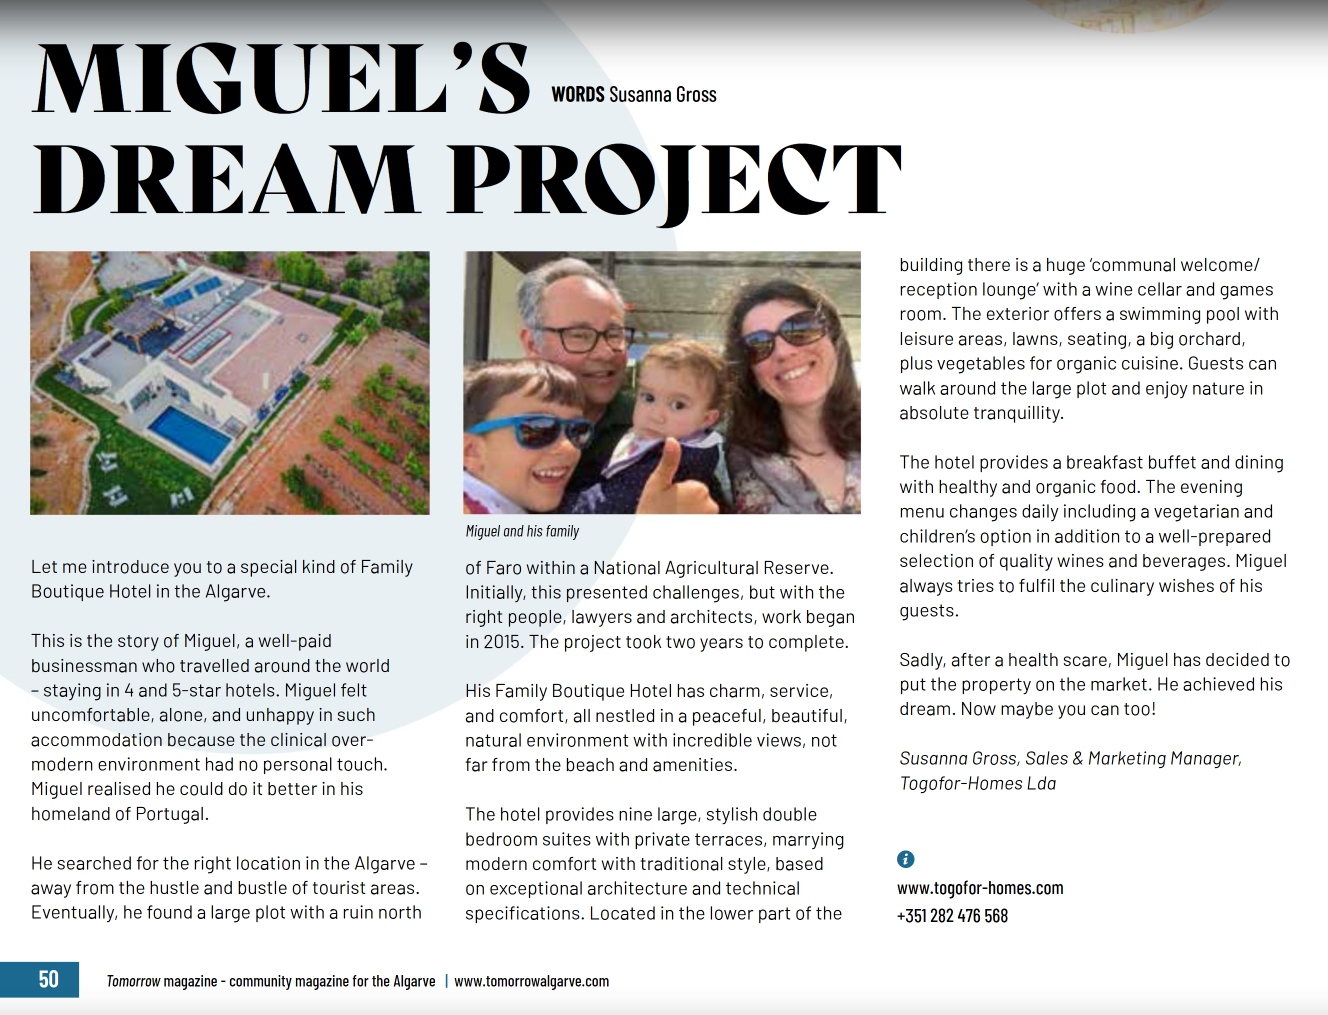 Article Tomorrow Algarve - Le projet de rêve de Miguel - Pourrait être votre rêve